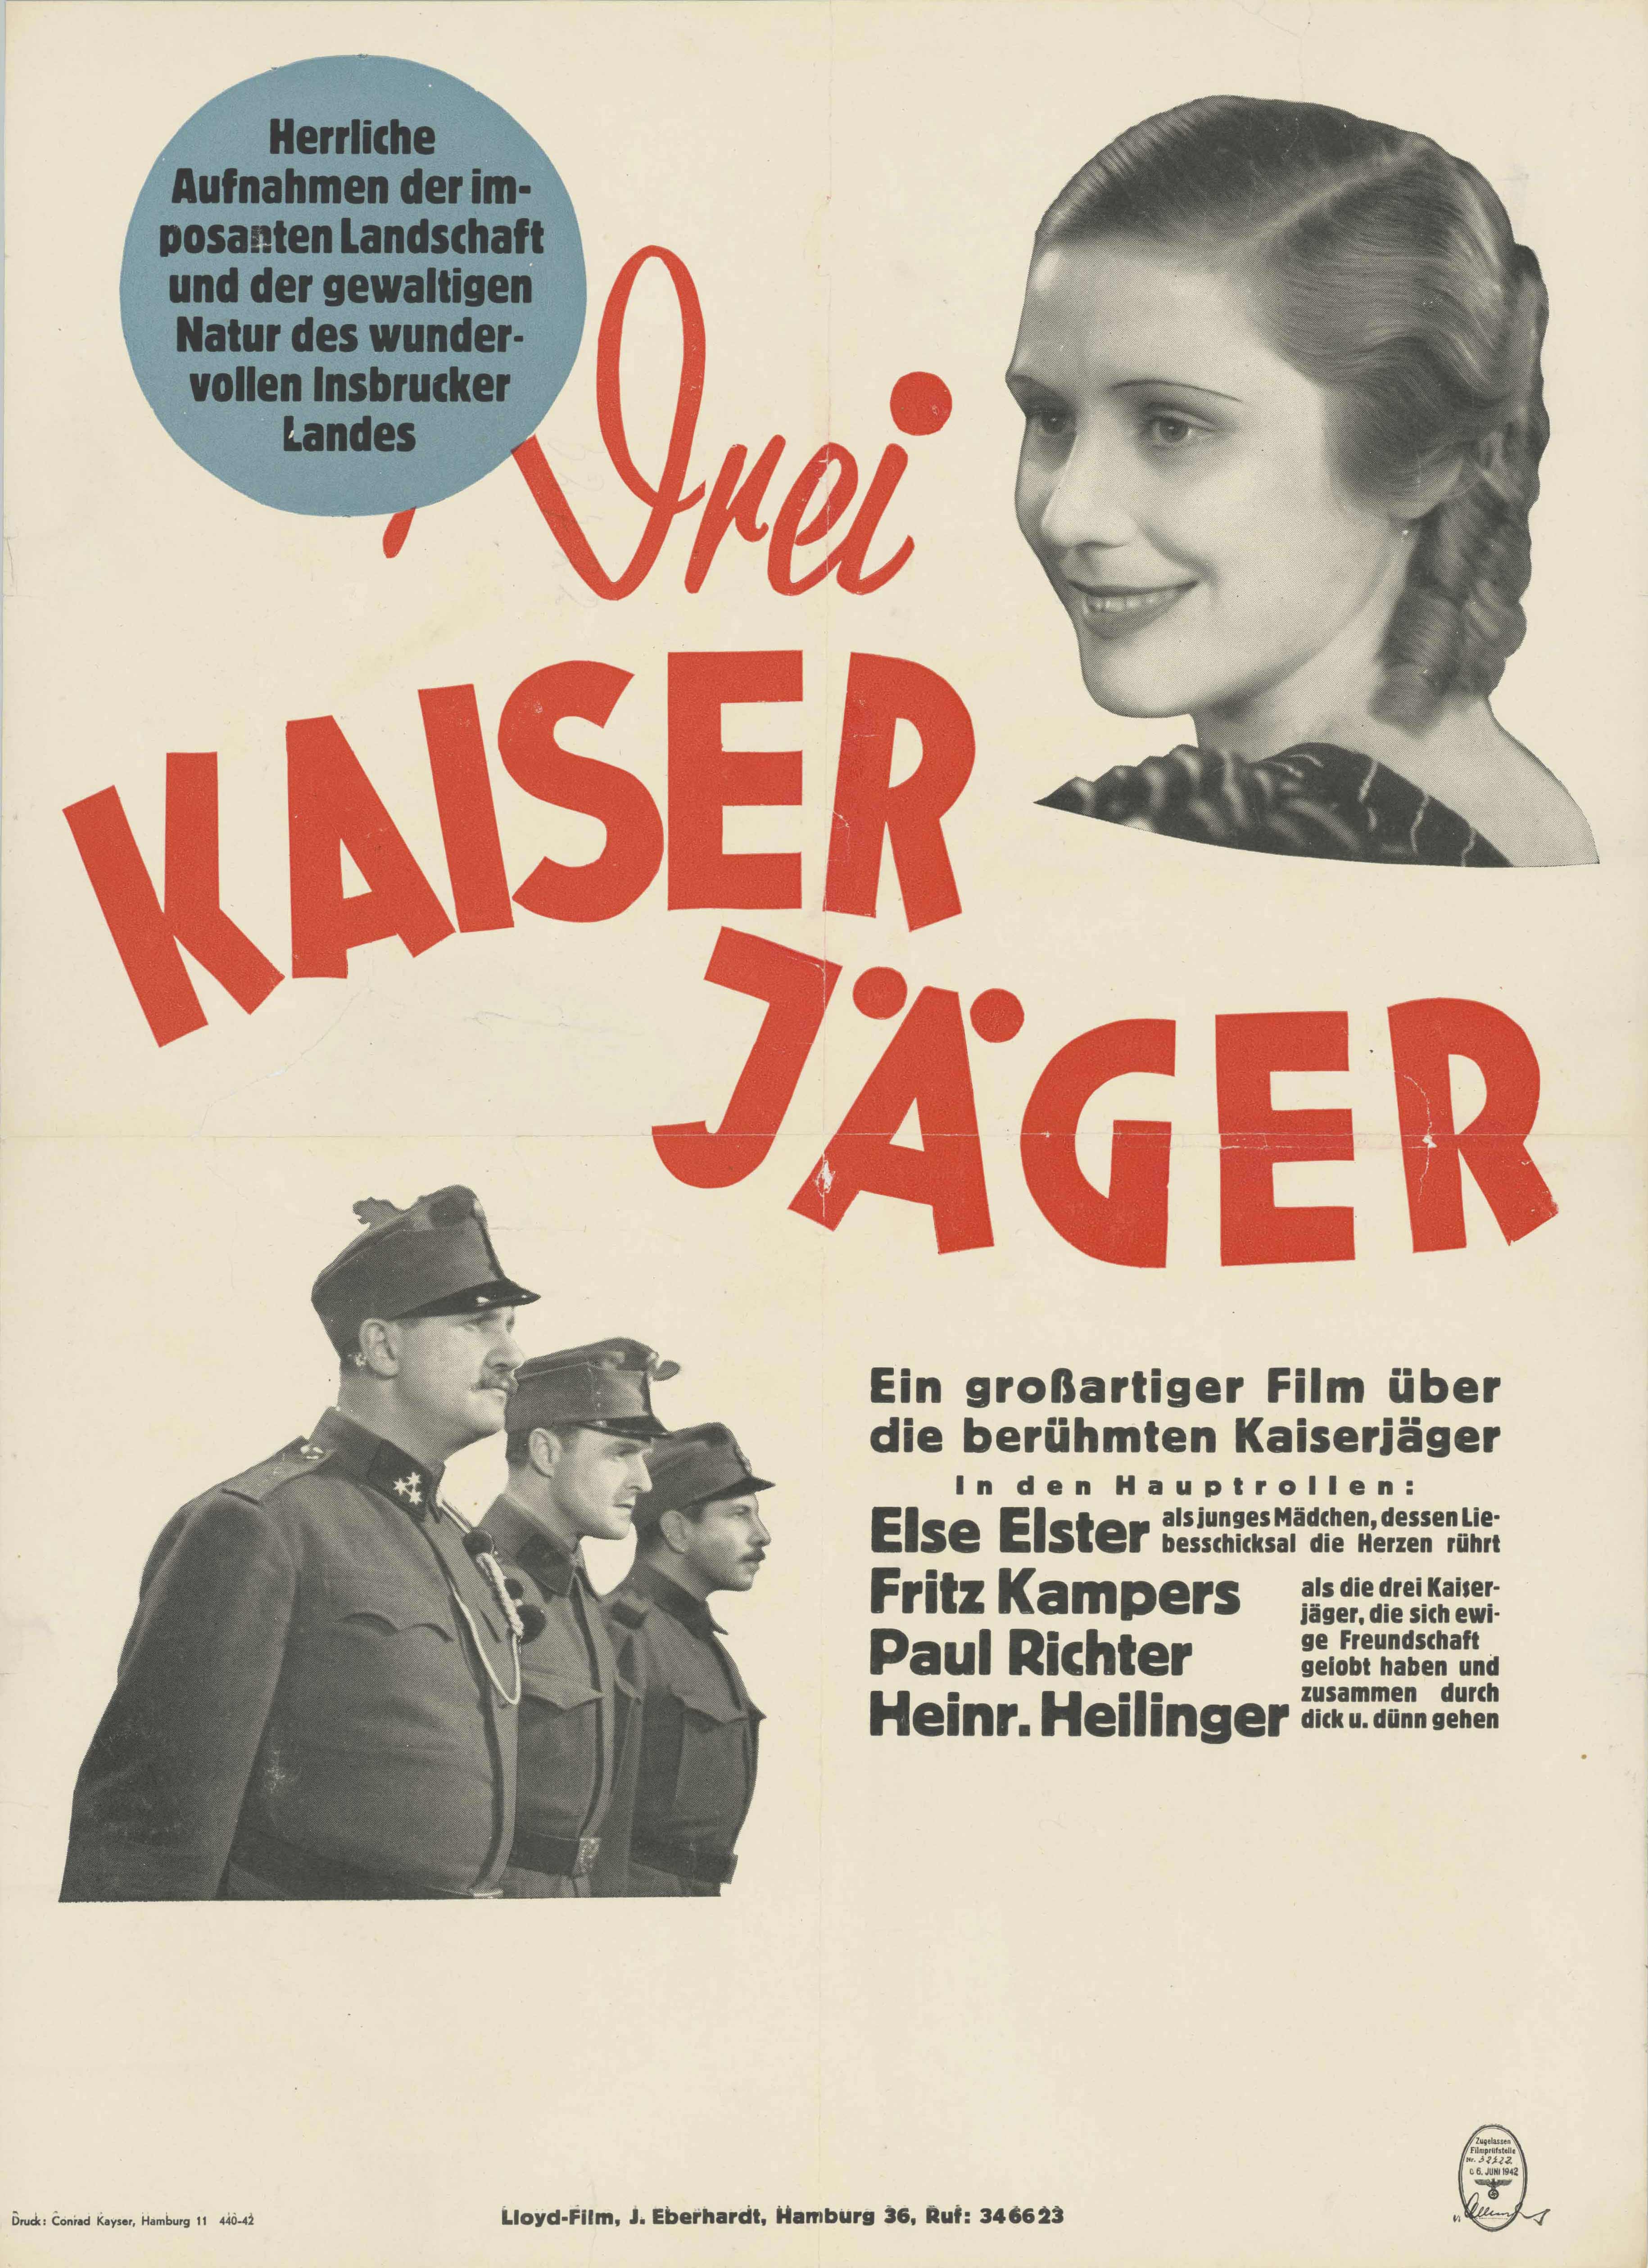 Film poster for Drei Kaiserjäger, Germany 1925